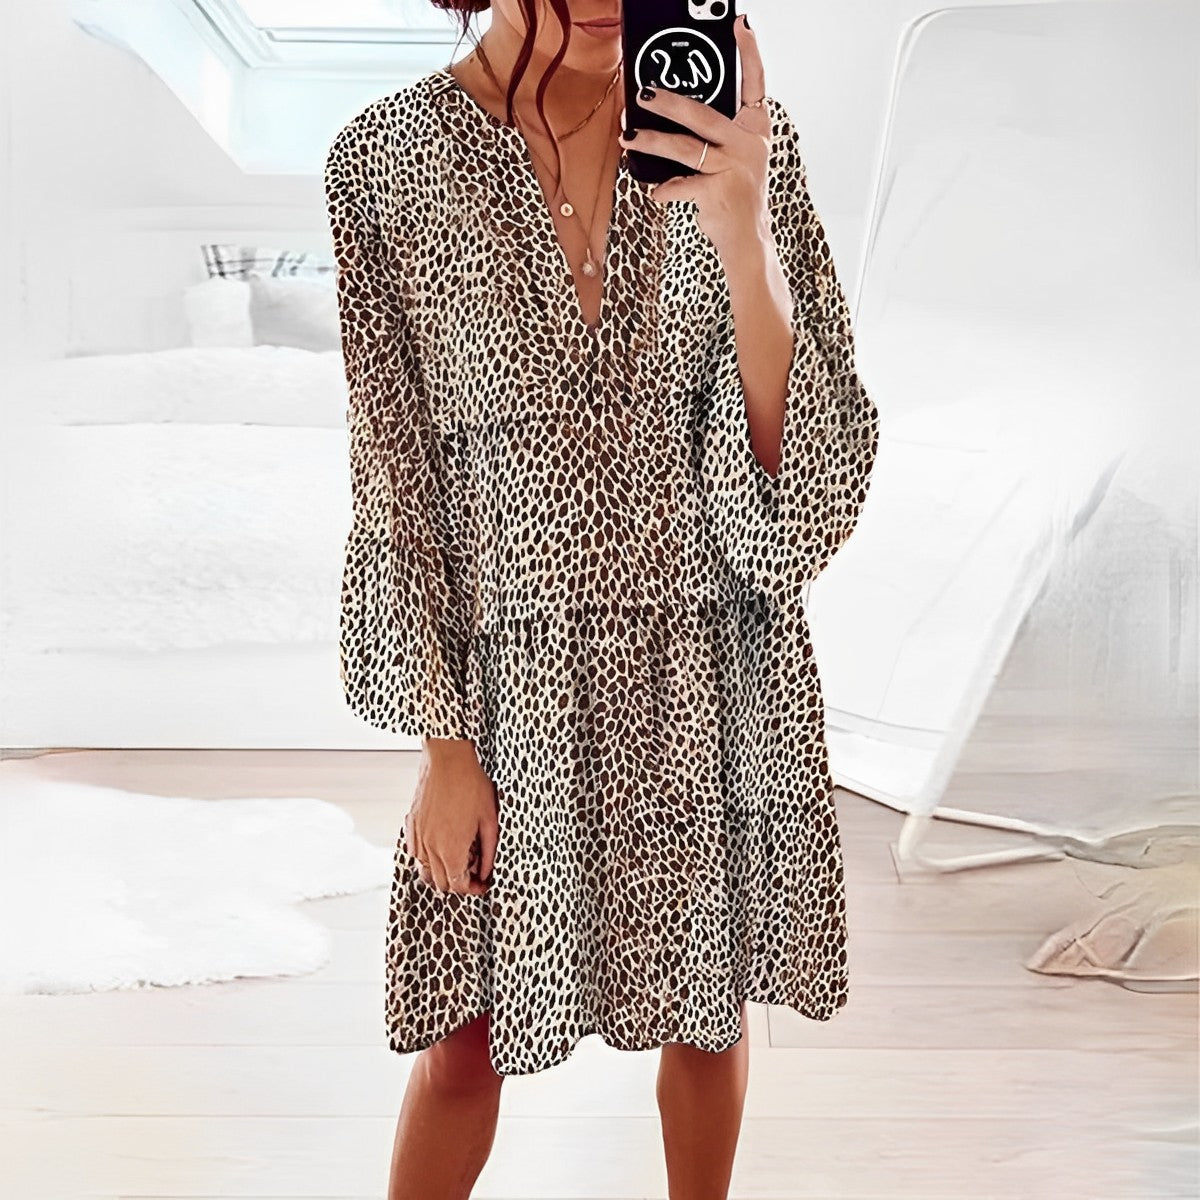 Inès Lavigne® - Knee length leopard print dress